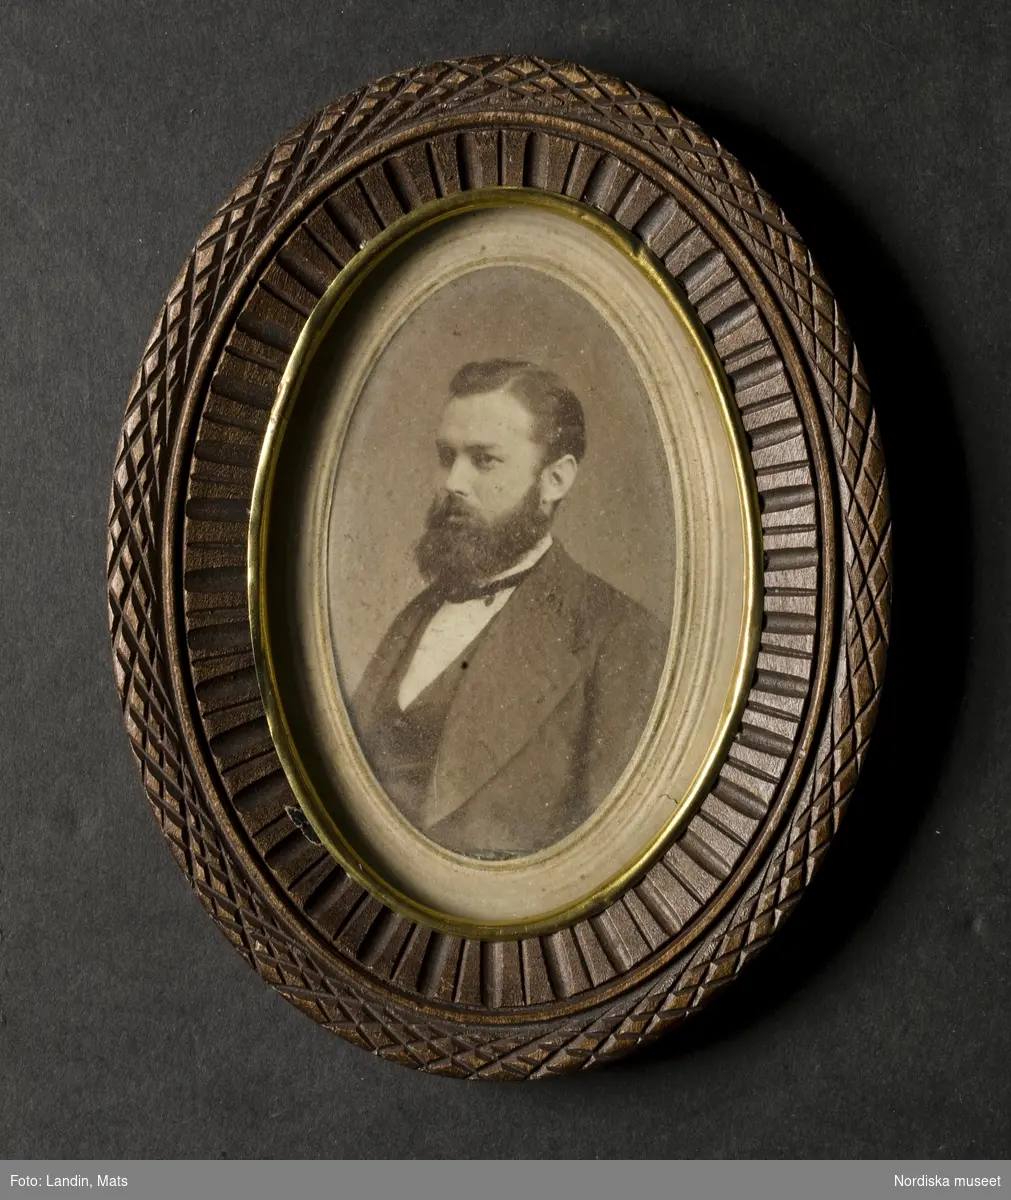 Porträtt av okänd herre med helskägg. Fotografi i oval ram av snidat trä. Nordiska museet inv.nr 194874

